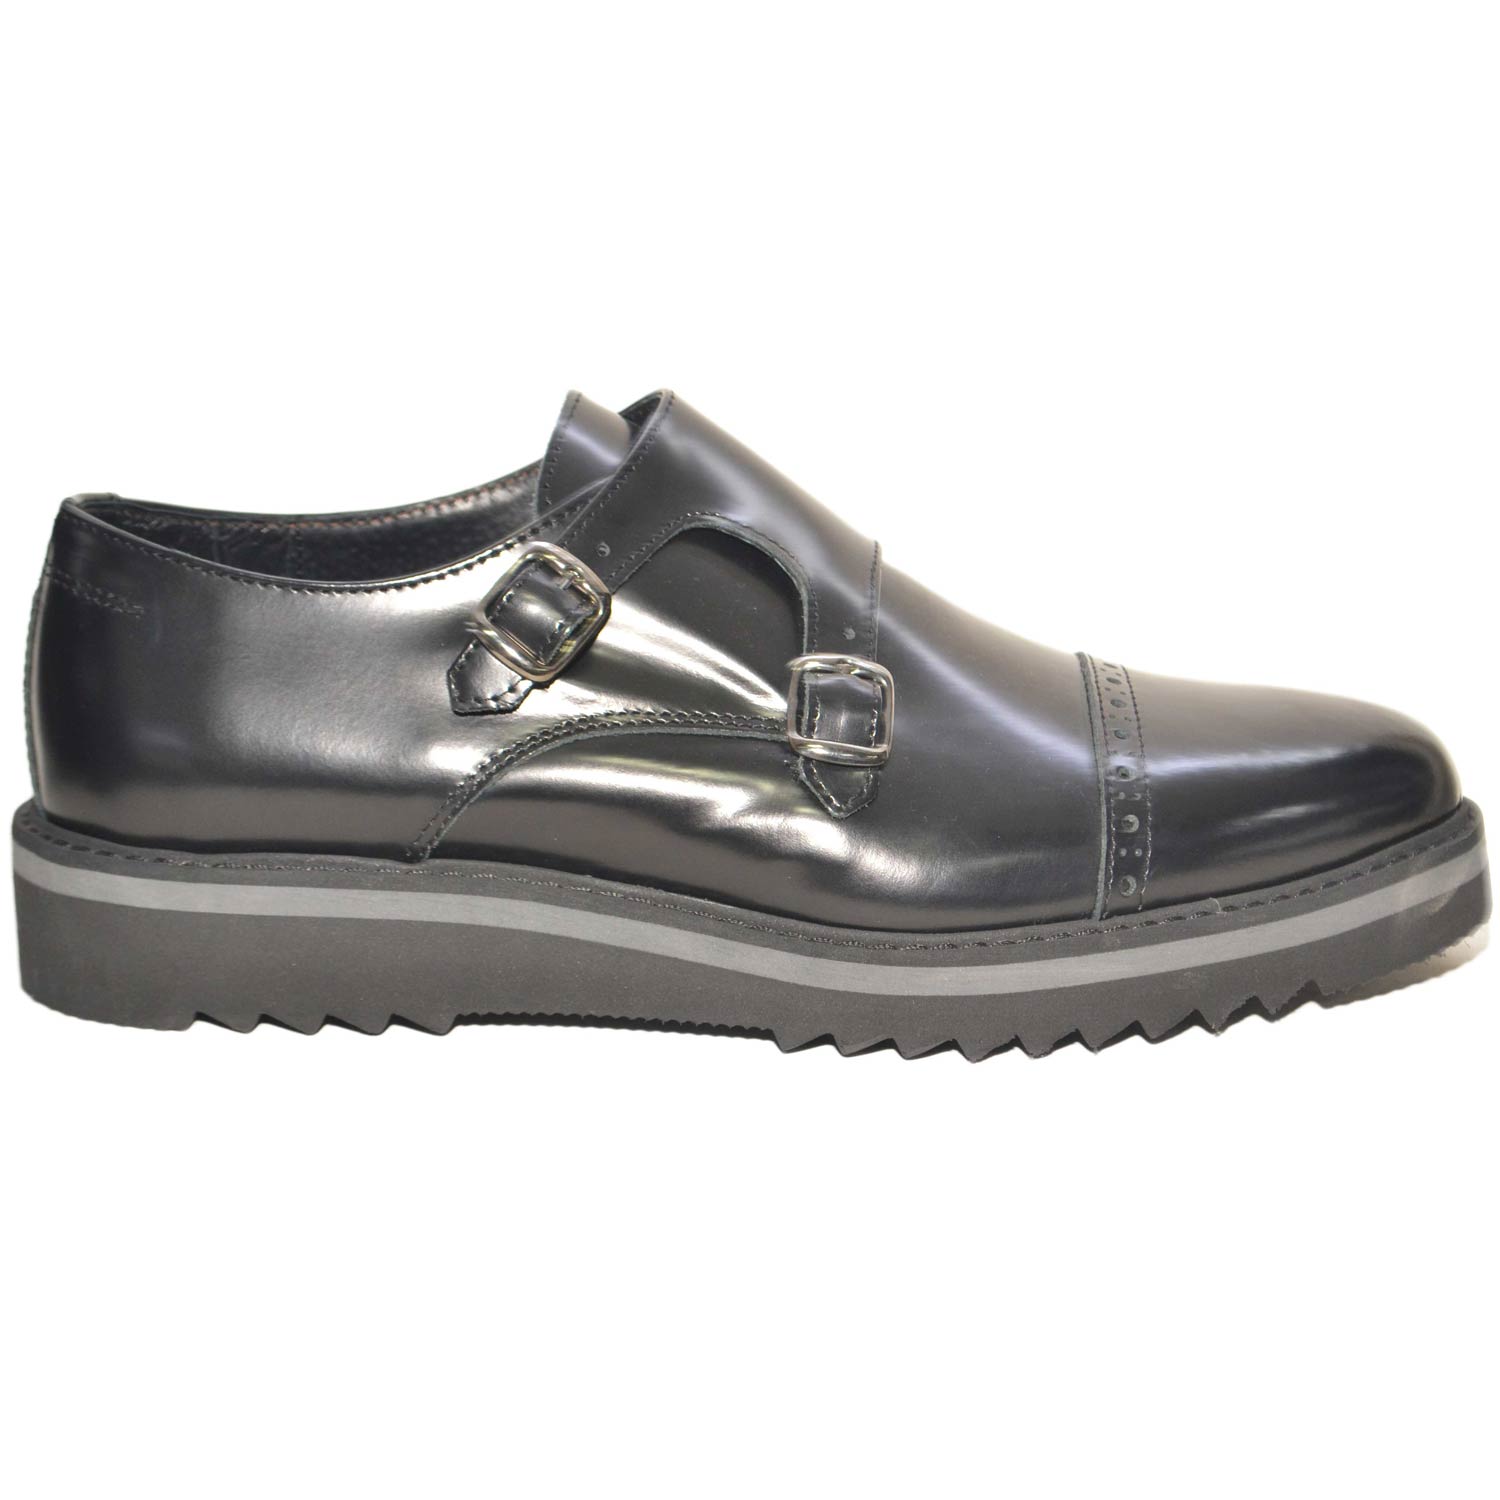 scarpe uomo doppia fibbia vera pelle abrasivato nero made in italy fondo  antisci | eBay